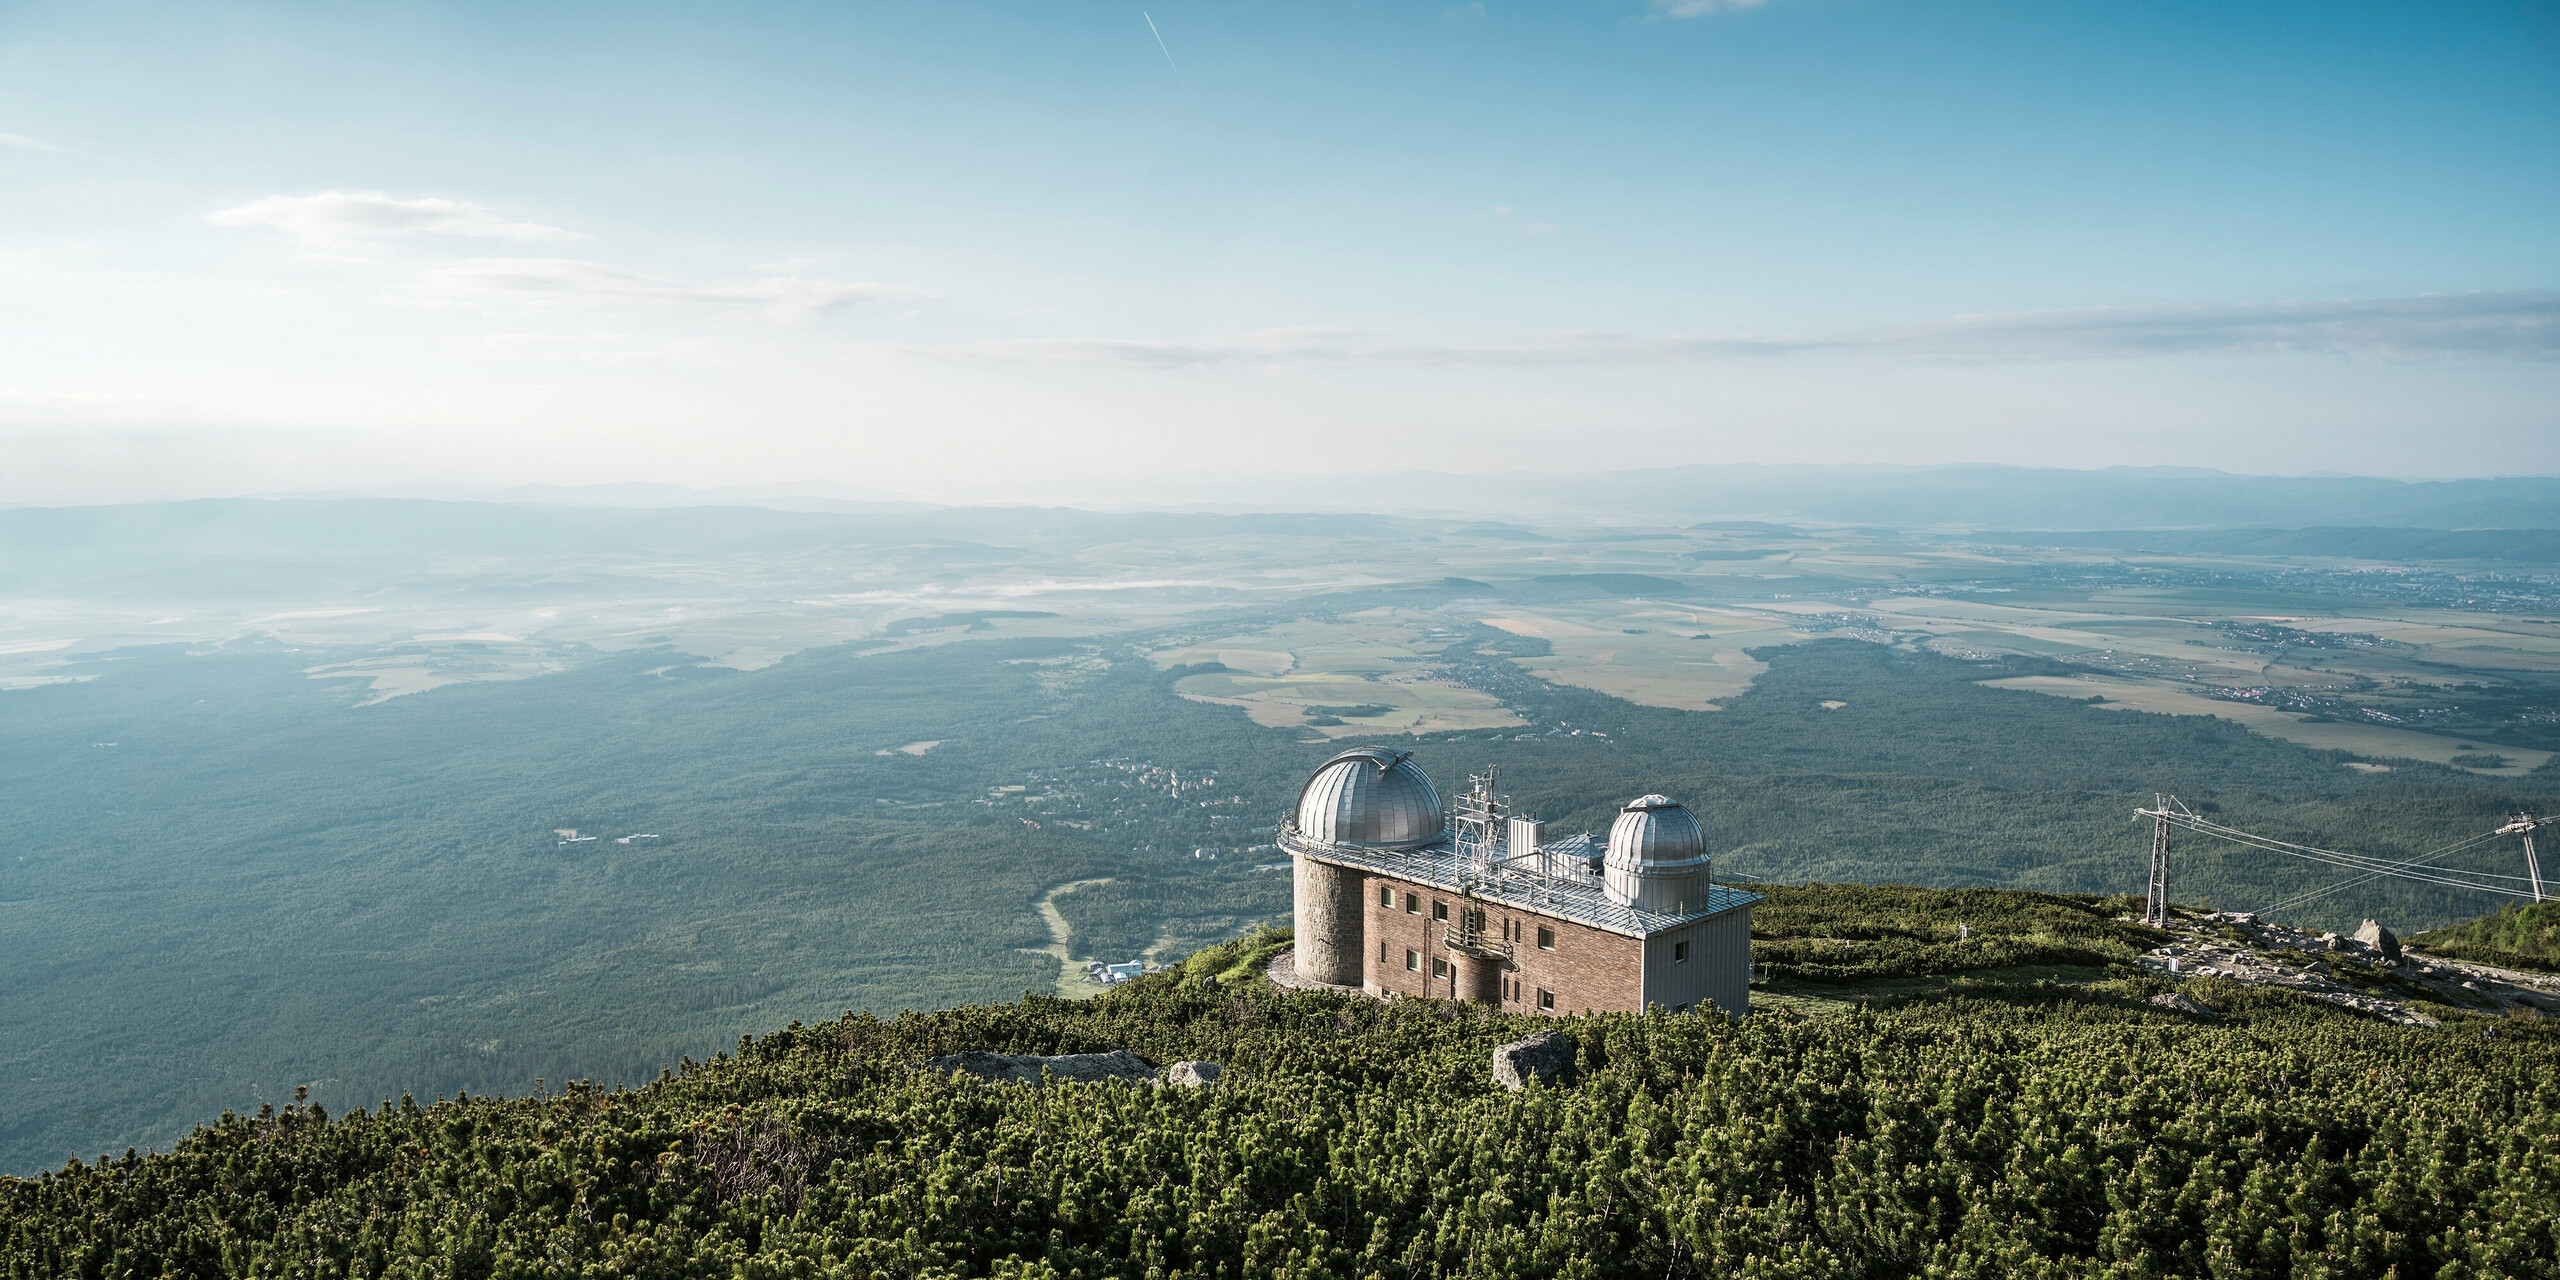 Atemberaubende Fernsicht von der Sternwarte Skalnate Pleso, die auf einer Höhe von 1 783 m liegt, umgeben von der friedlichen Pracht der Hohen Tatra in der Slowakei. Die beiden charakteristischen Kuppeln, die mit silbermetallisch glänzendem PREFALZ verkleidet sind, spiegeln die Weite des Himmels wider und harmonieren mit der Natur. Das Observatorium steht nicht nur für astronomische Spitzenleistungen, sondern auch für die Langlebigkeit und ökologische Stärke von PREFA, dessen Aluminiumprodukte selbst in dieser abgelegenen Höhe Schutz und Haltbarkeit bieten und für die eine umfassende Garantie von 40 Jahren gilt.